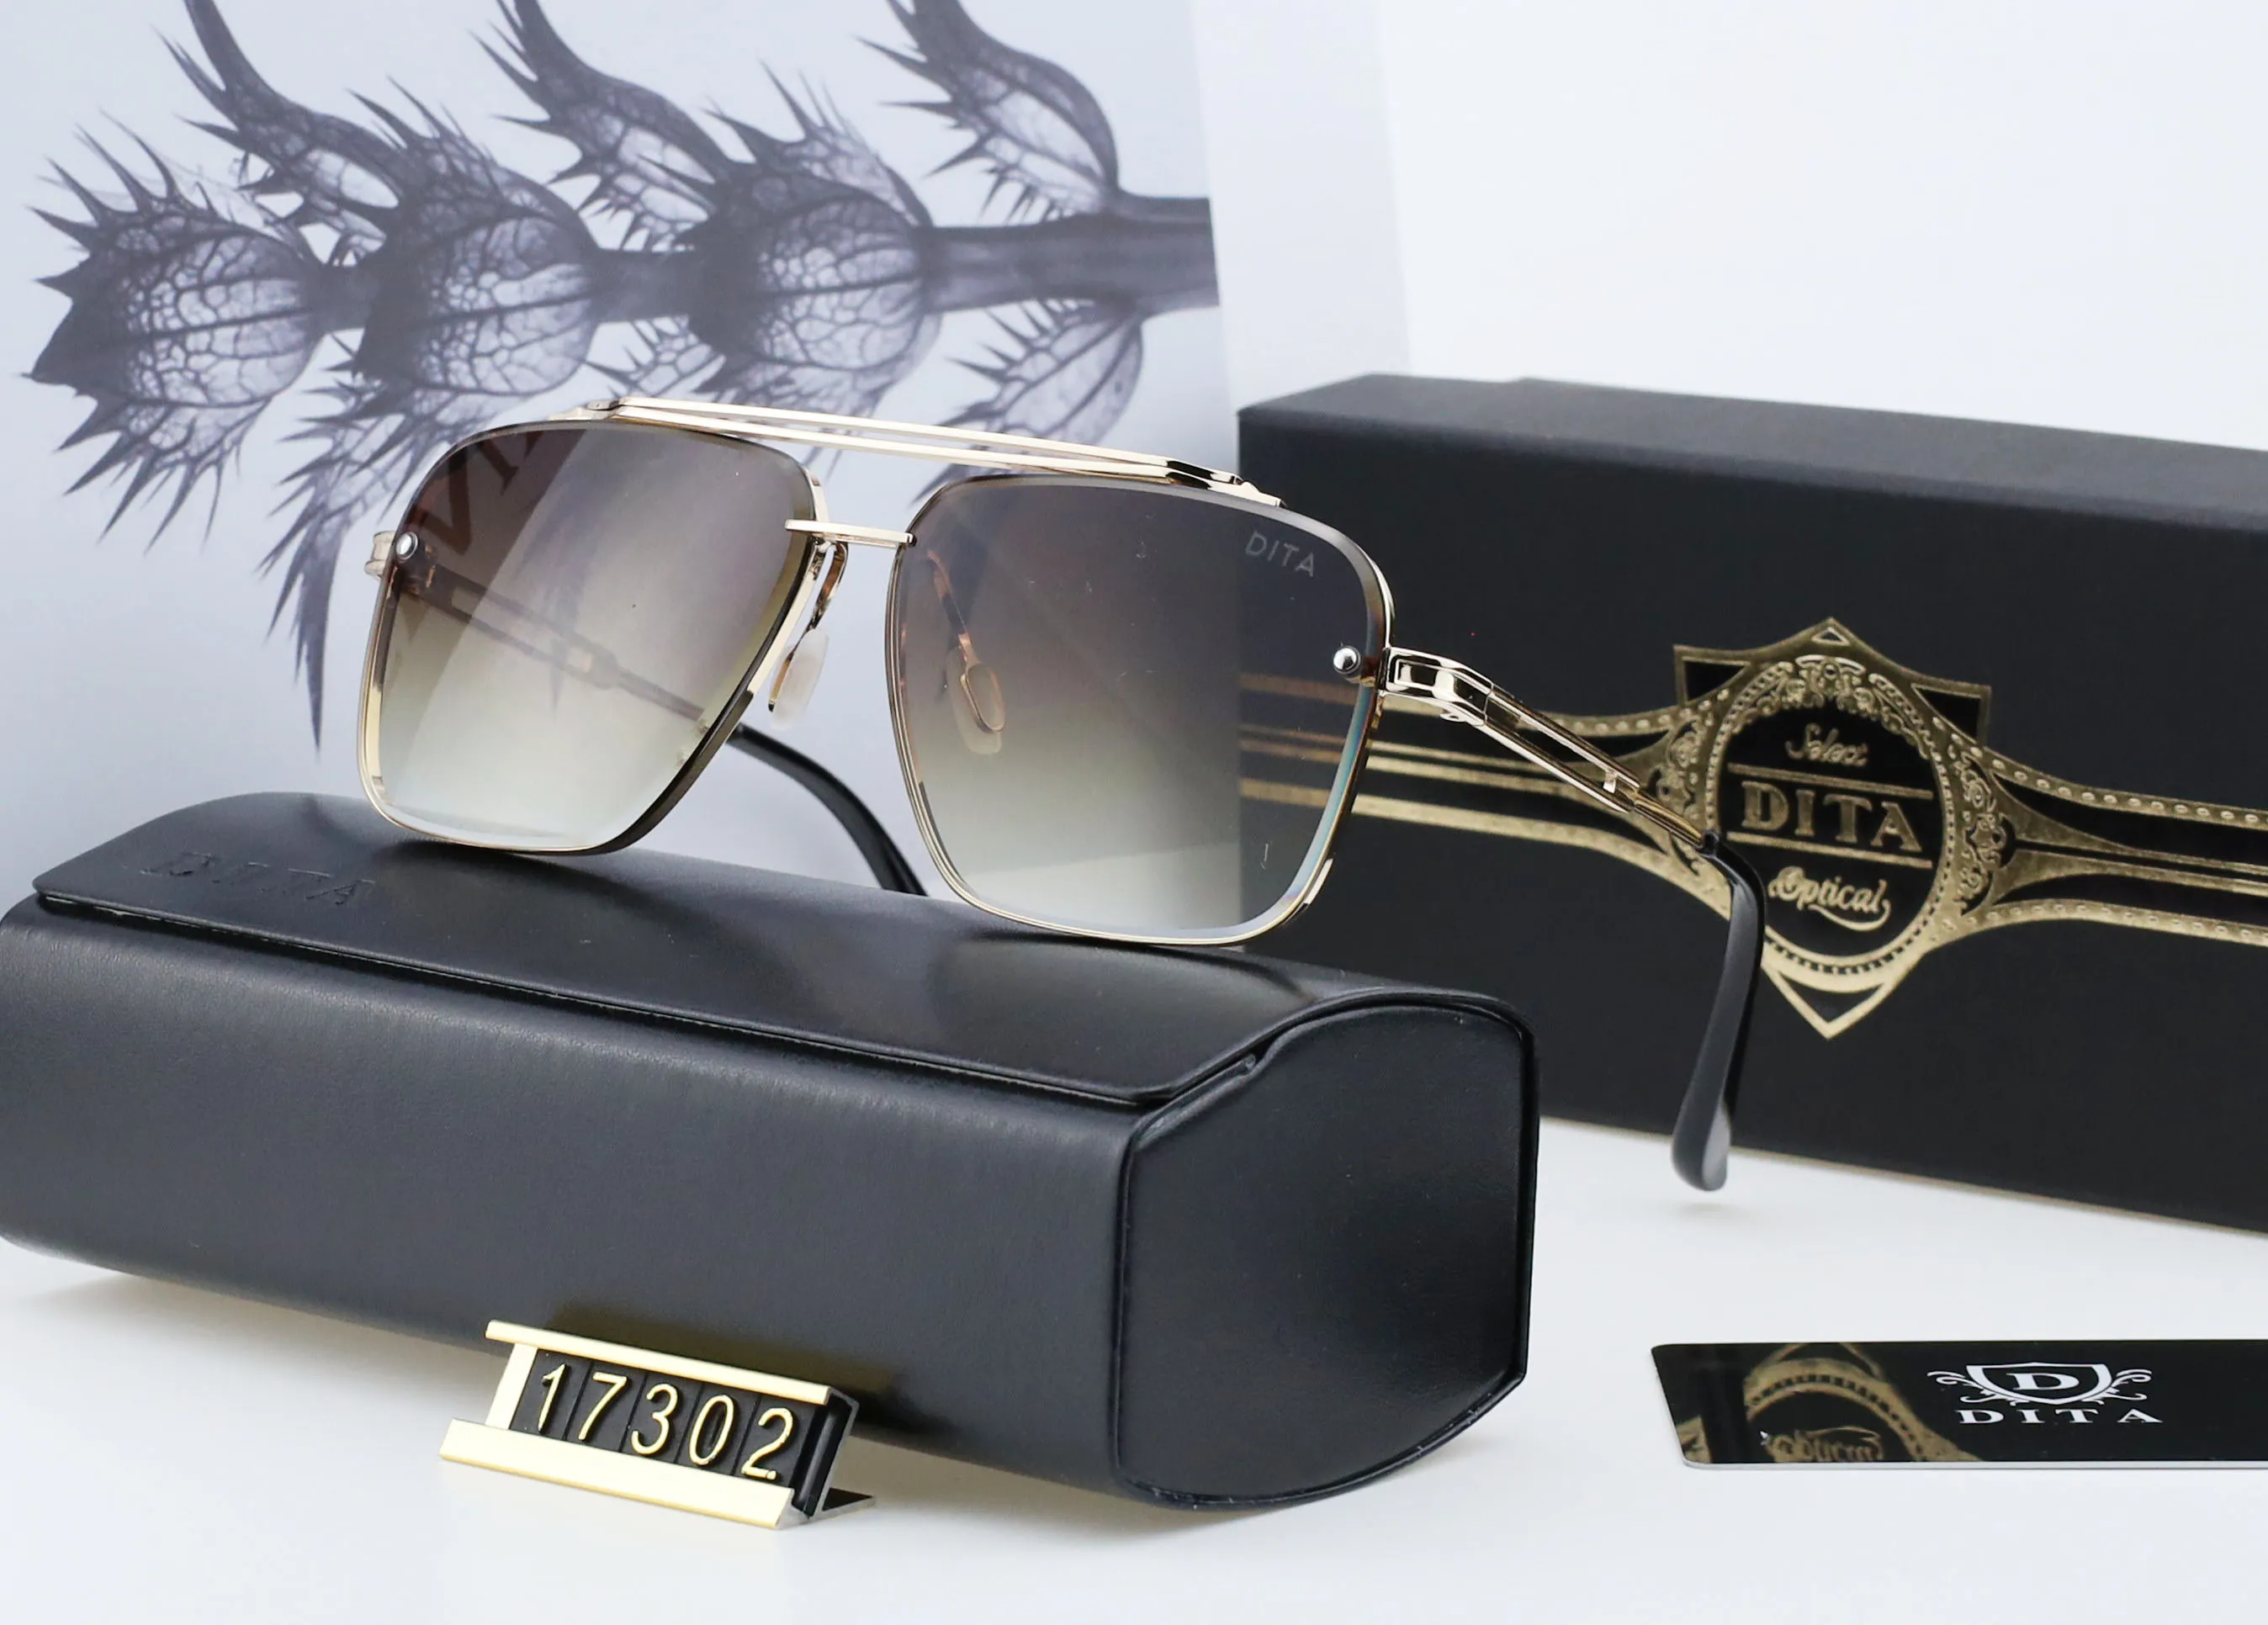 DITA 17302 sunglasses design women sun glasses polarized lens UV400 square frame for men287i